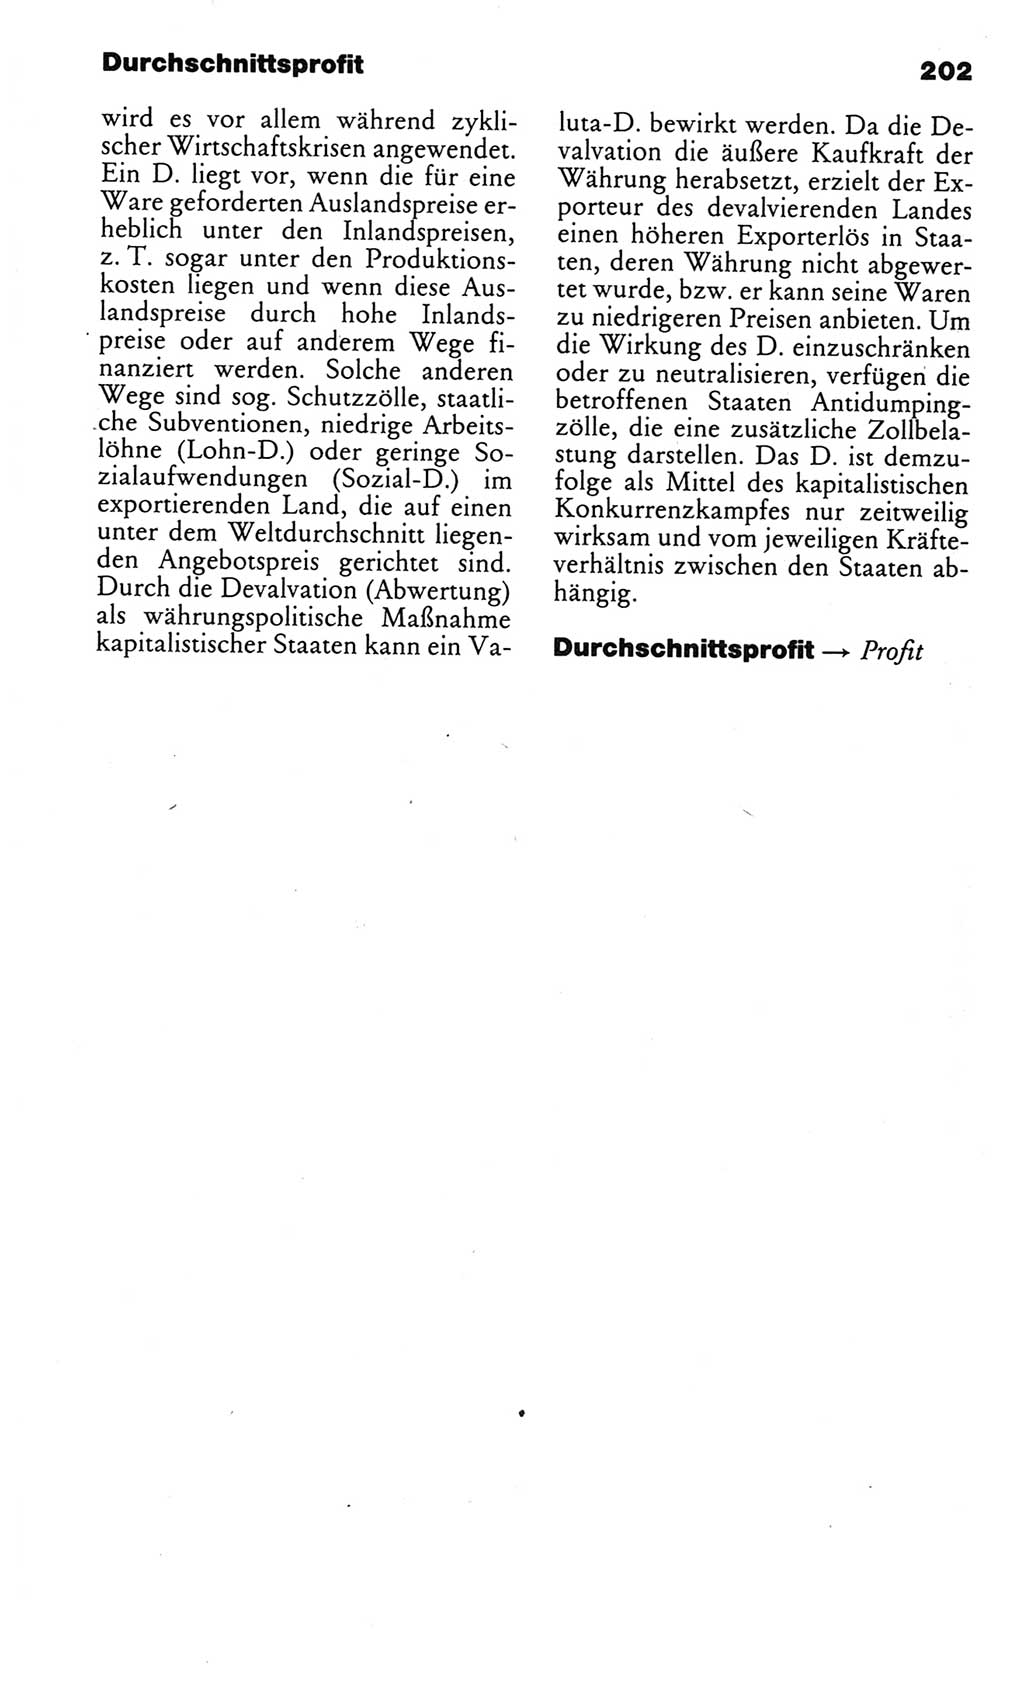 Kleines politisches Wörterbuch [Deutsche Demokratische Republik (DDR)] 1983, Seite 202 (Kl. pol. Wb. DDR 1983, S. 202)